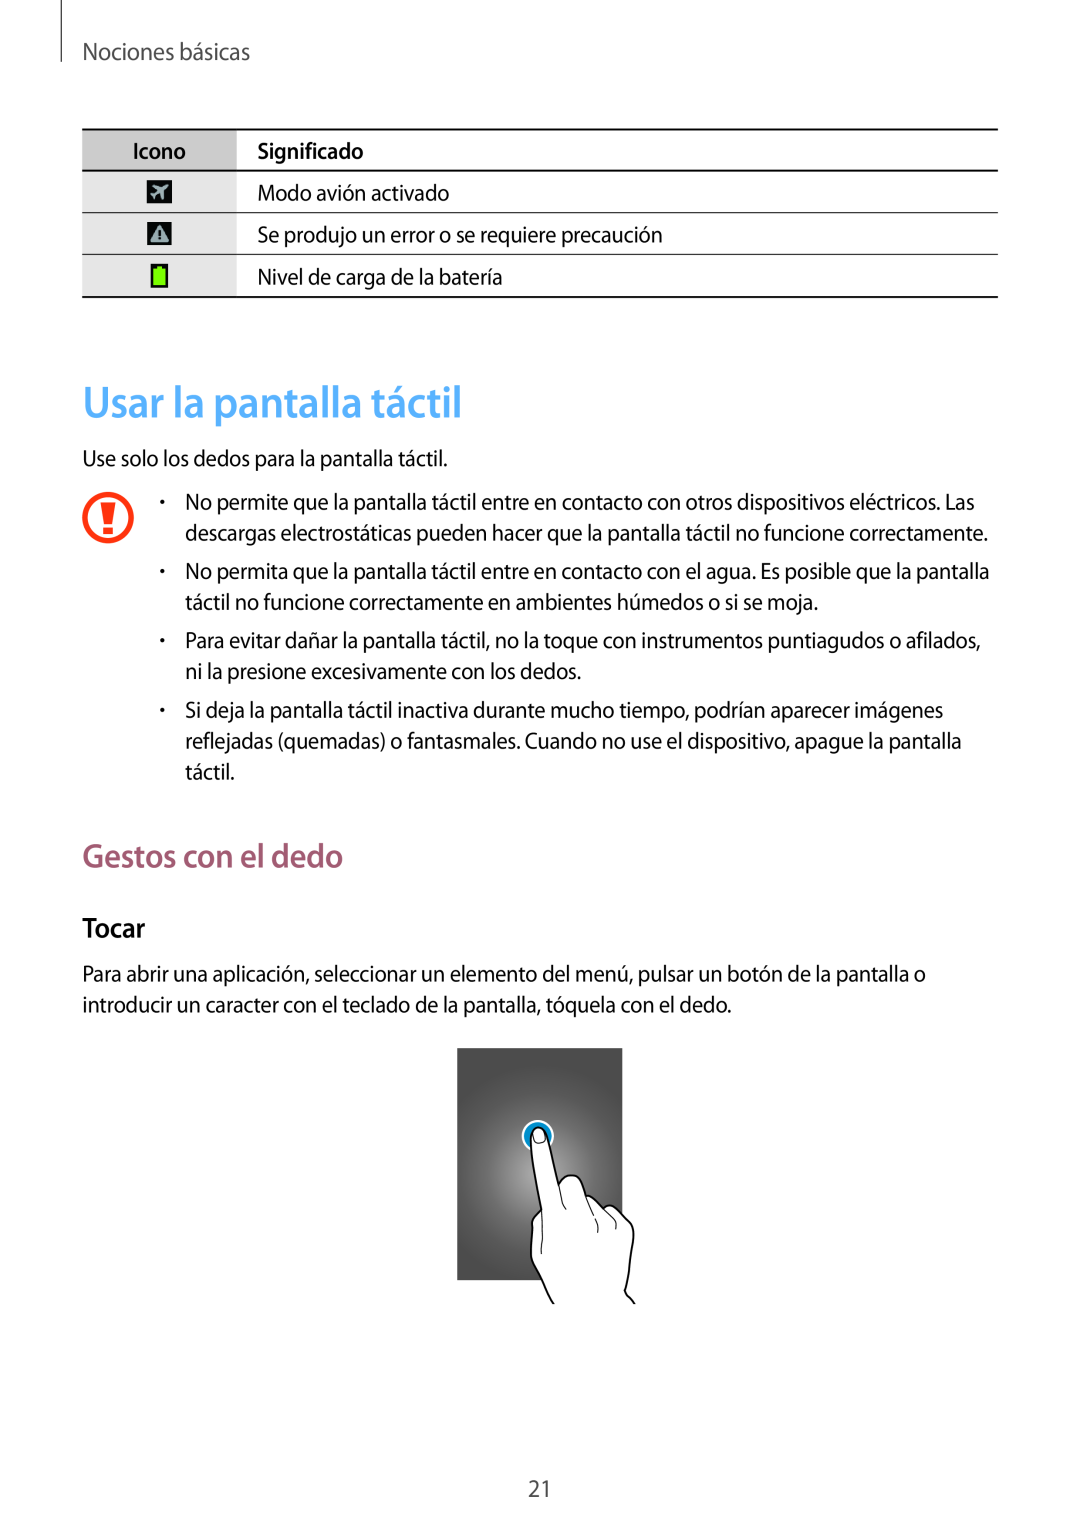 Samsung GT-I8730TAATPH manual Usar la pantalla táctil, Gestos con el dedo, Tocar, Nociones básicas, Icono Significado 